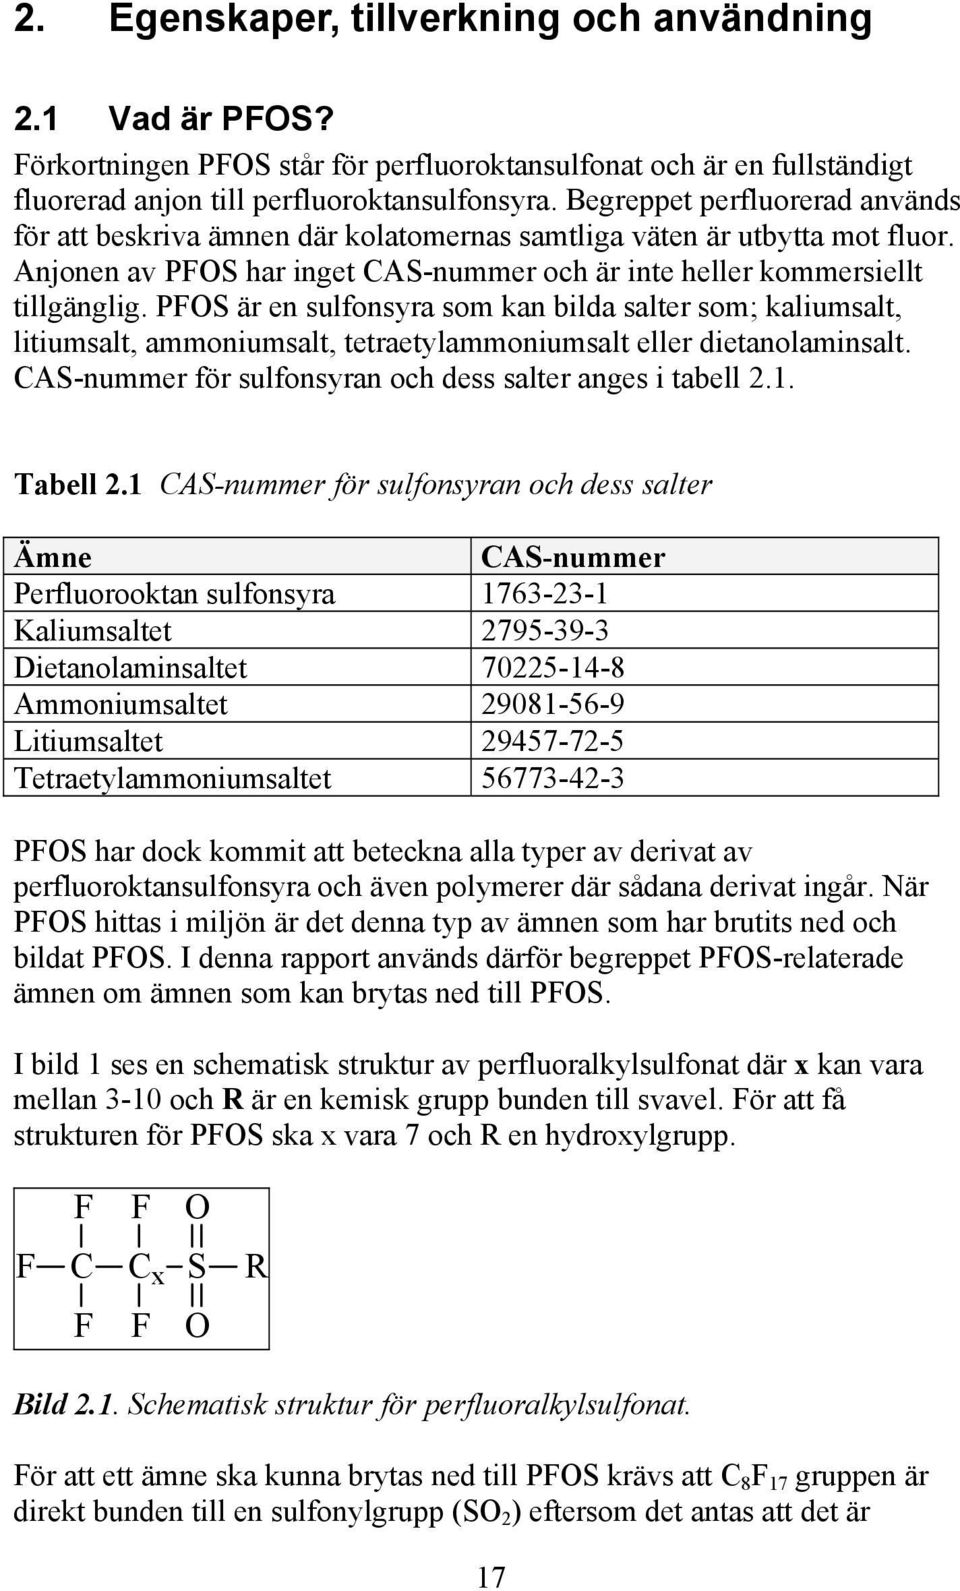 PFOS är en sulfonsyra som kan bilda salter som; kaliumsalt, litiumsalt, ammoniumsalt, tetraetylammoniumsalt eller dietanolaminsalt. CAS-nummer för sulfonsyran och dess salter anges i tabell 2.1.